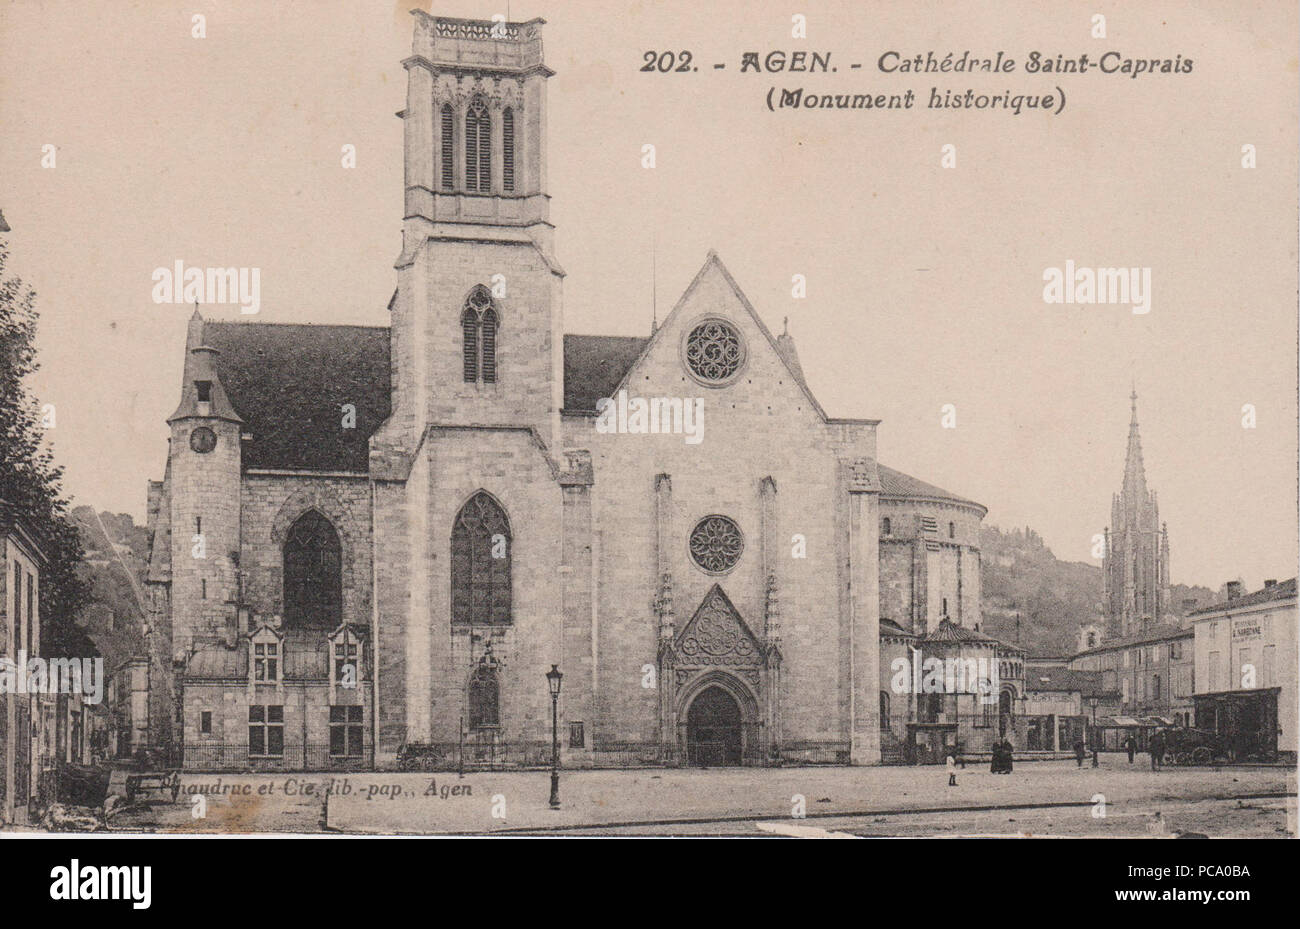 Agen - Cathédrale Saint-Caprais (CP Chaudruc). Stock Photo